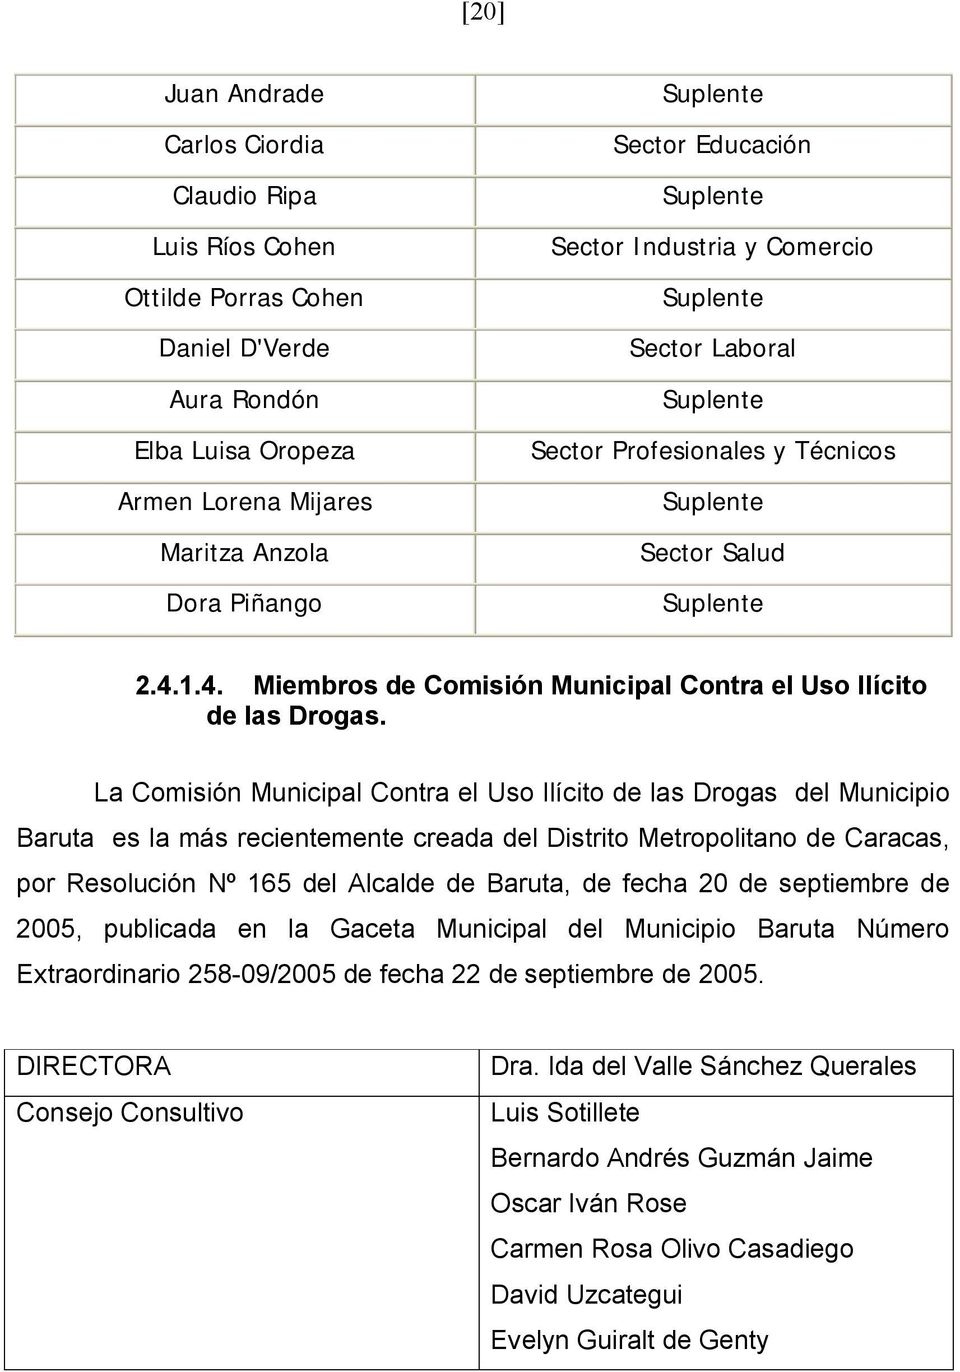 1.4. Miembros de Comisión Municipal Contra el Uso Ilícito de las Drogas.